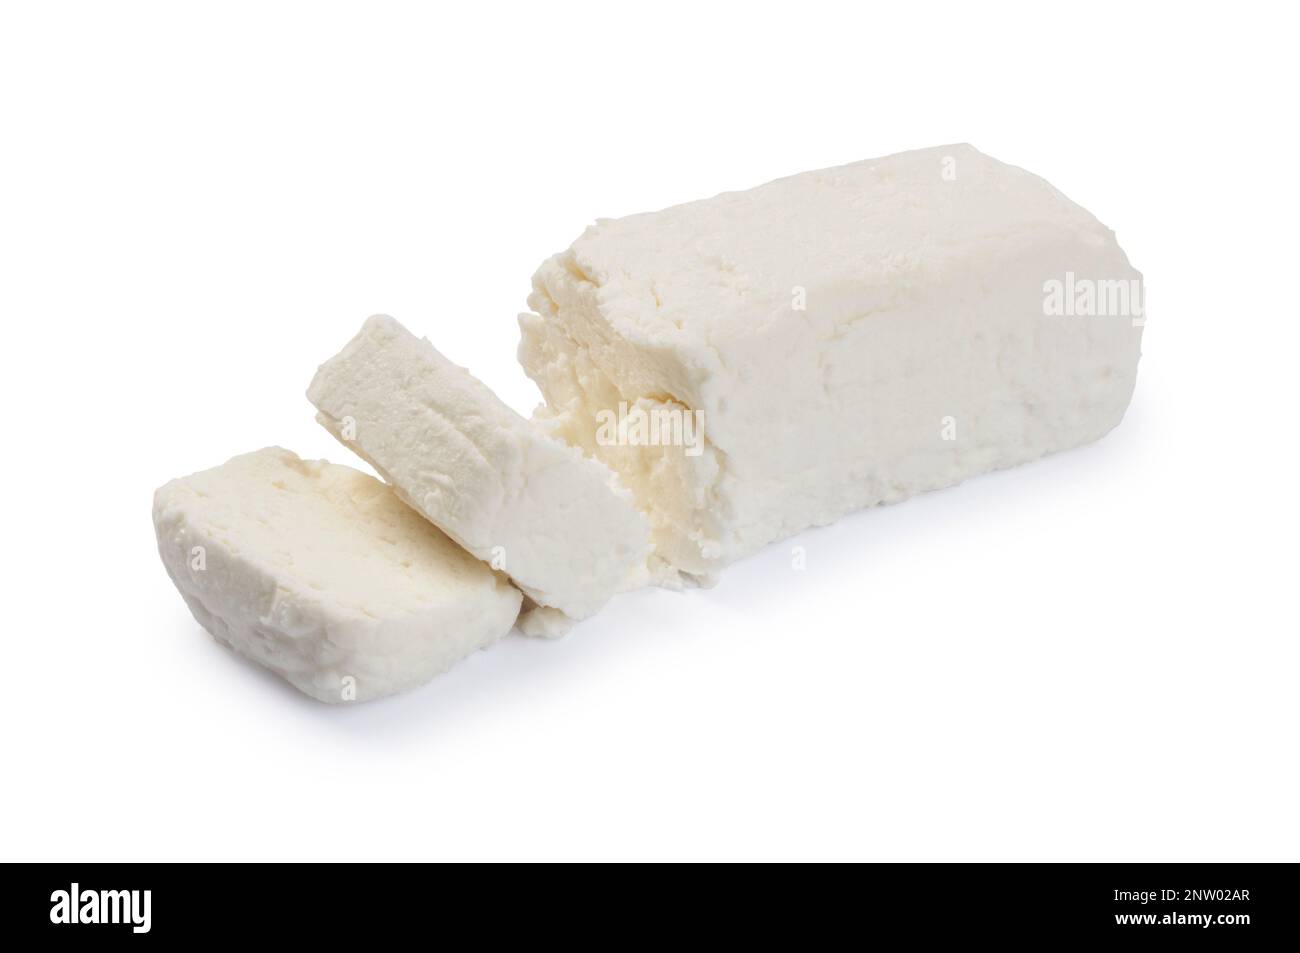 Tiro de estudio de queso de cabra cortado contra un fondo blanco - John Gollop Foto de stock